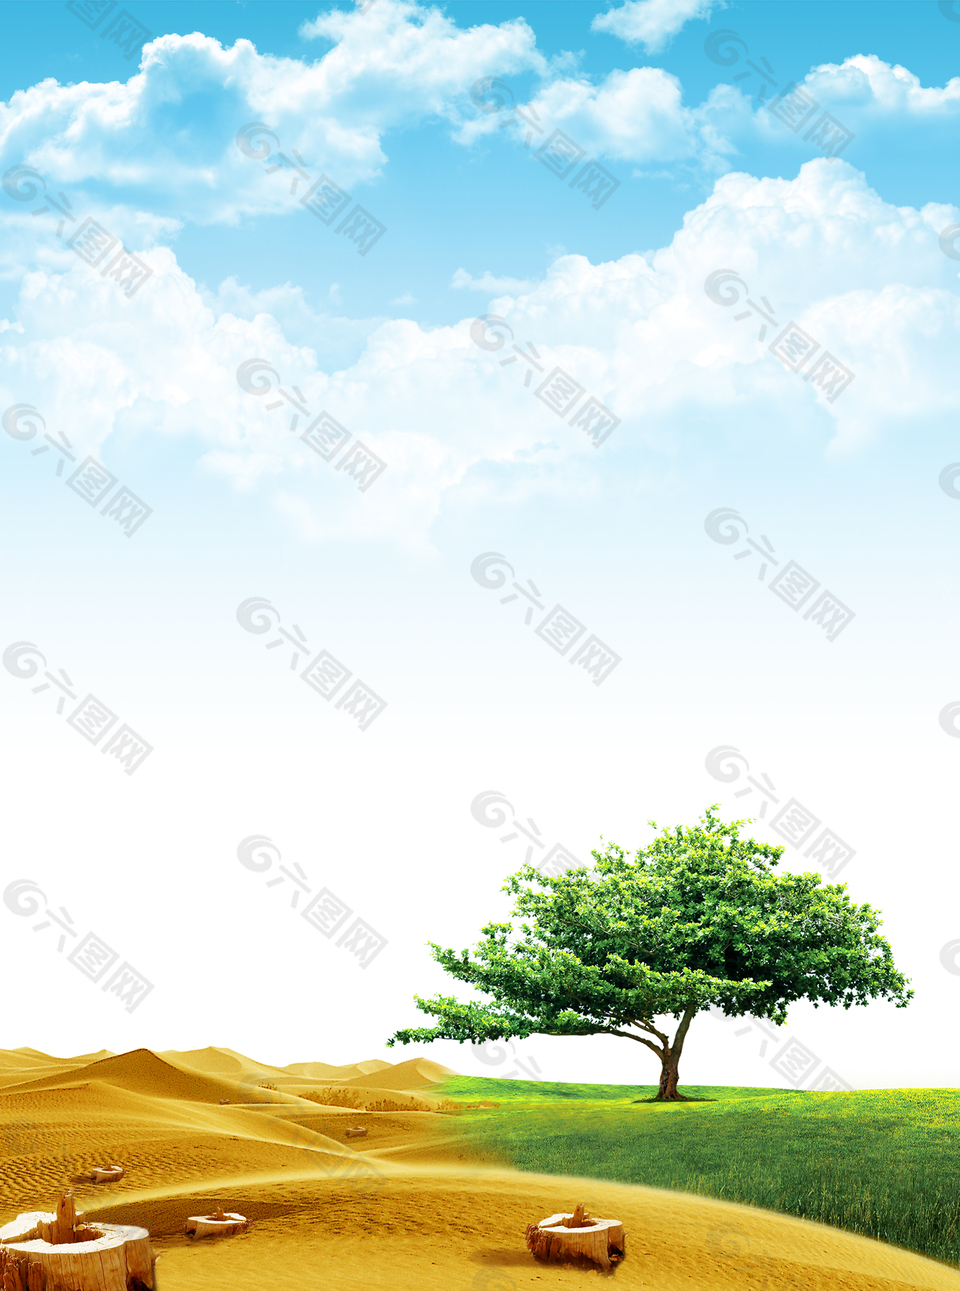 蓝天白云风景沙漠绿洲草地背景素材